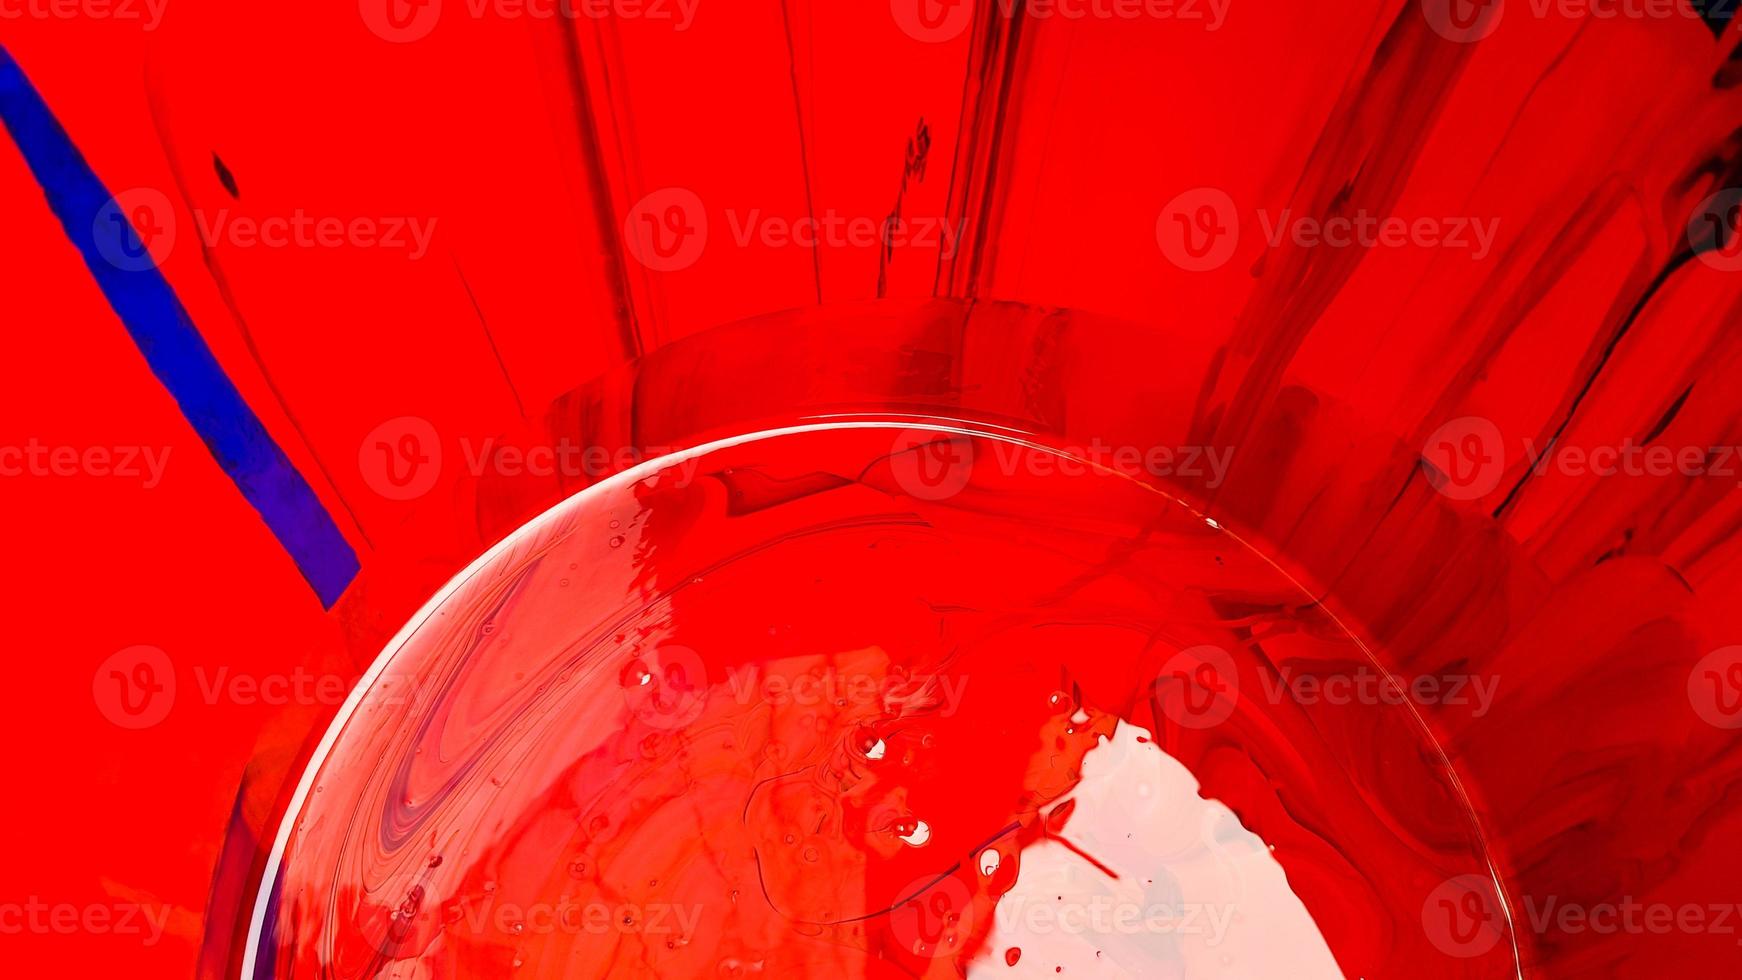 sfondo astratto di vernice rossa versata con secchi su uno sfondo nero. la vernice rossa sta versando su uno sfondo nero. usalo per un artista o un concetto creativo. vernici versate sfondo rosso colorato foto